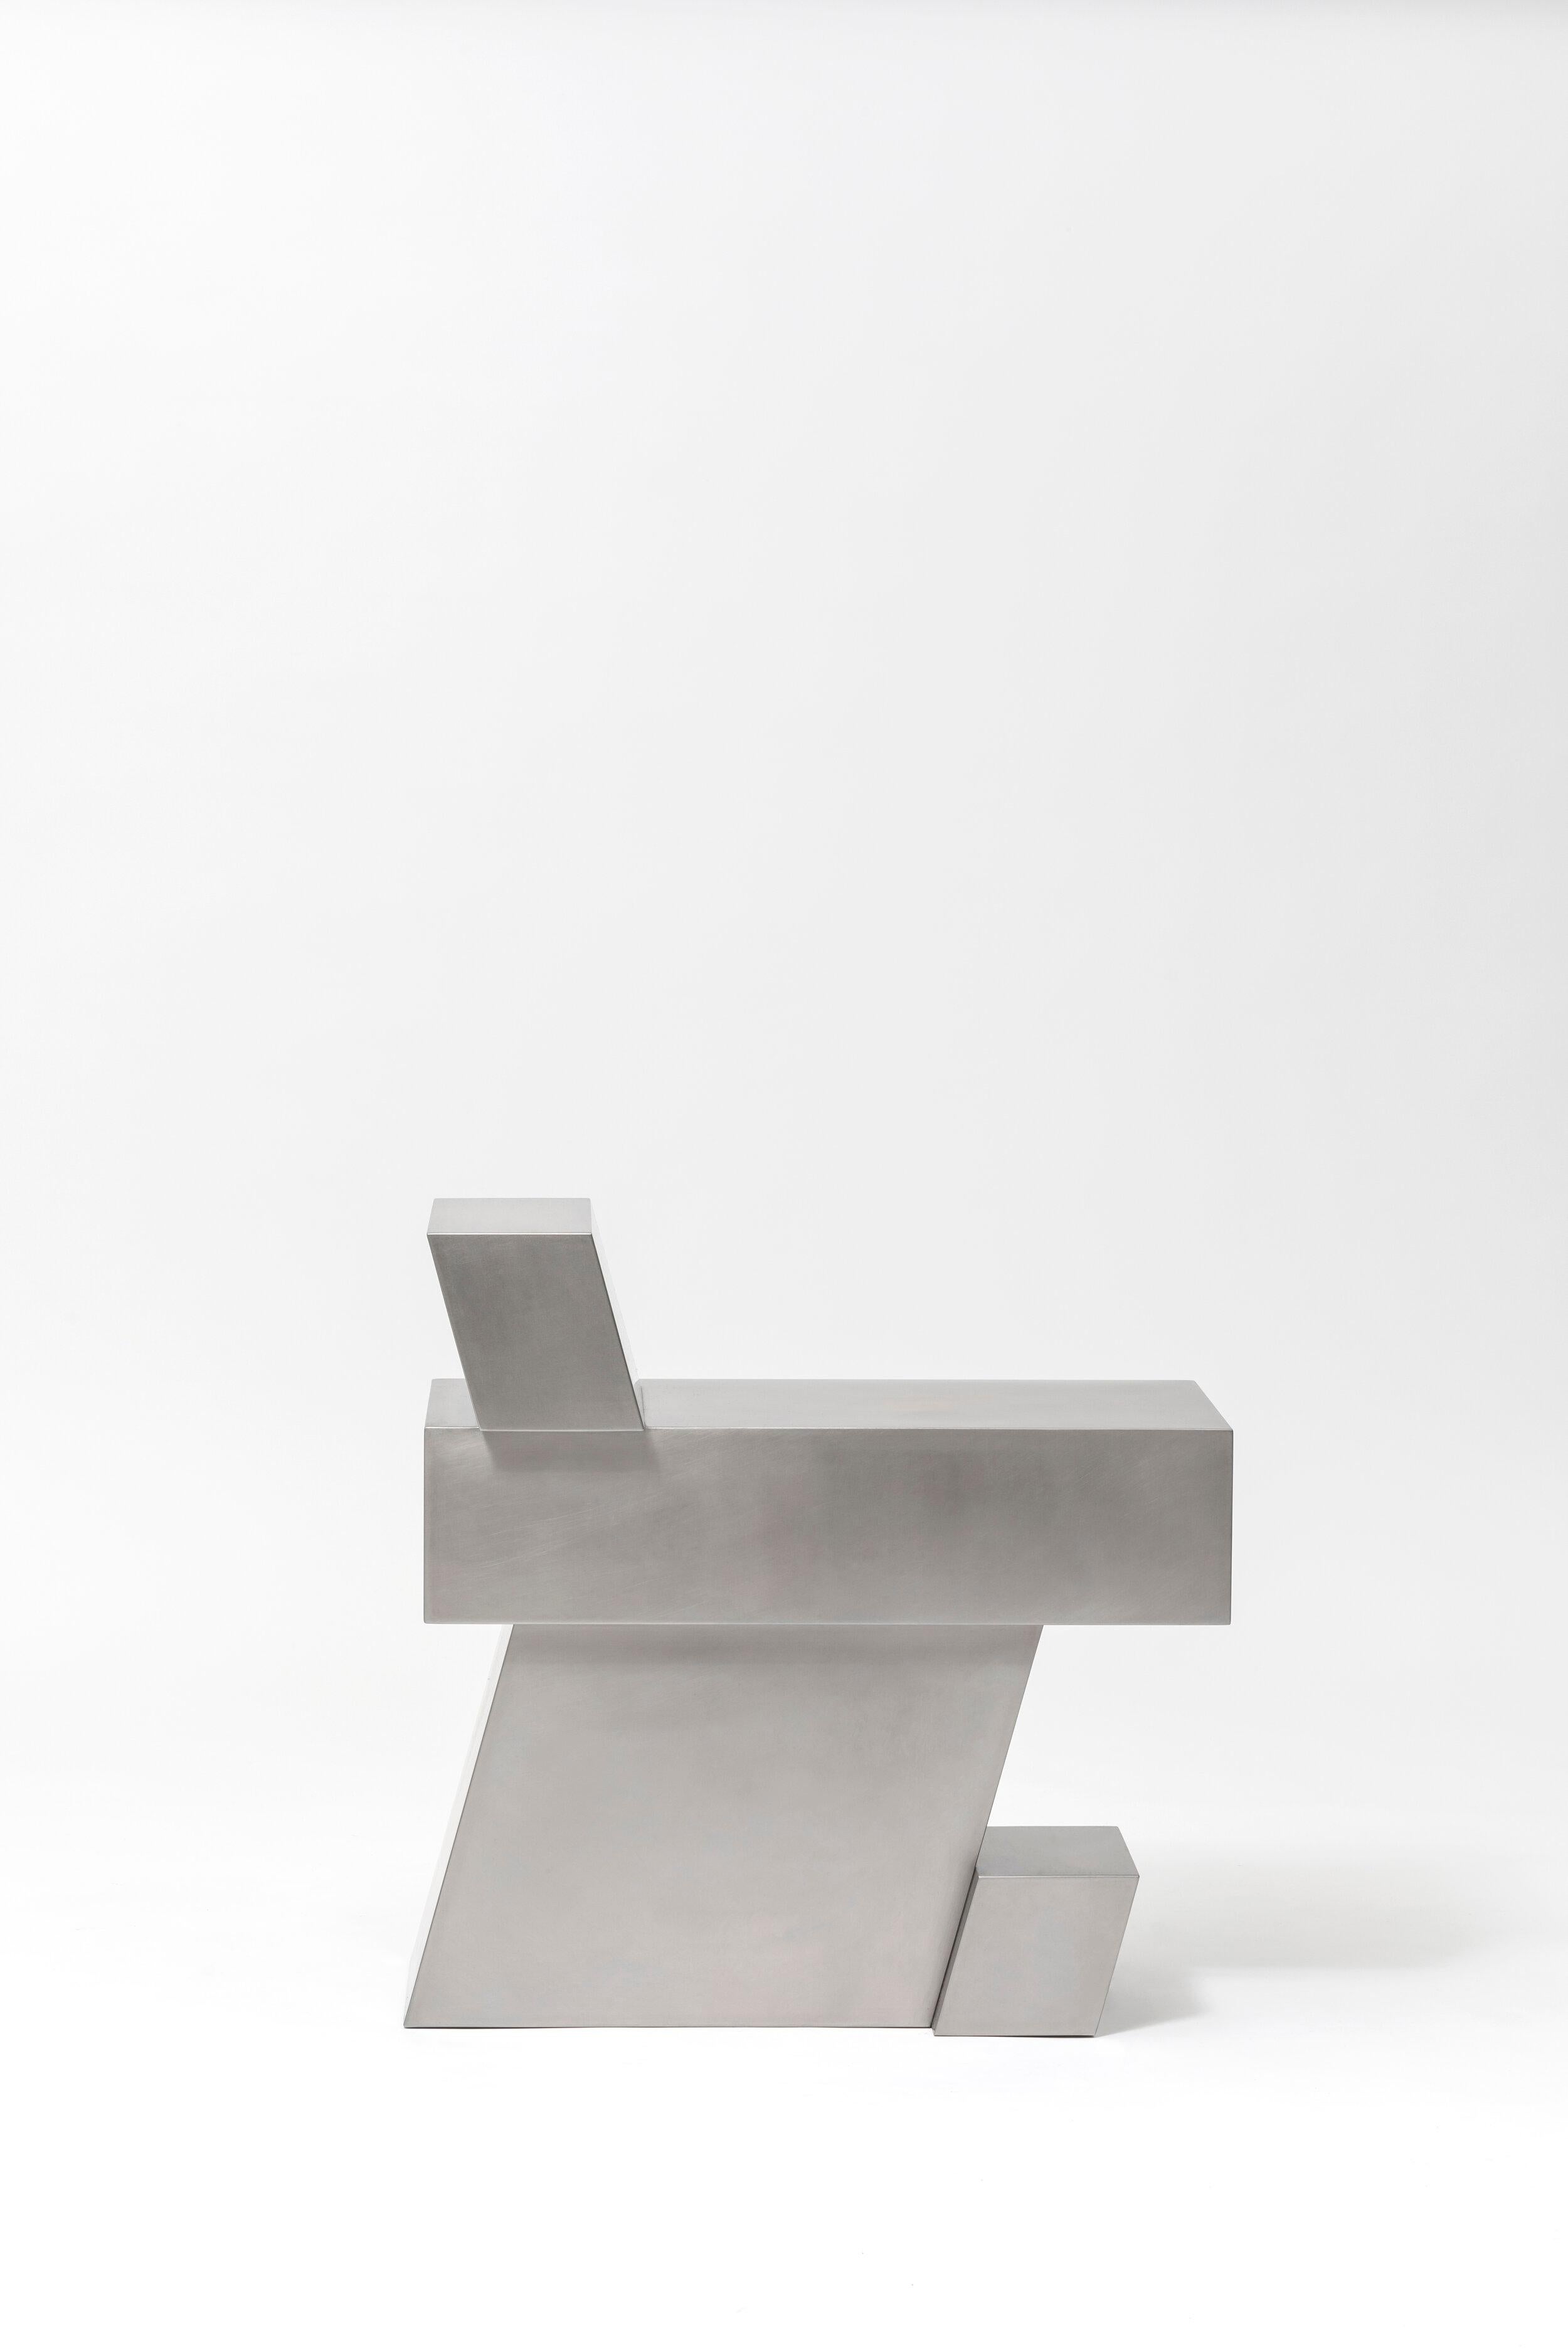 Korean Layered Steel Seat XVI by Hyungshin Hwang